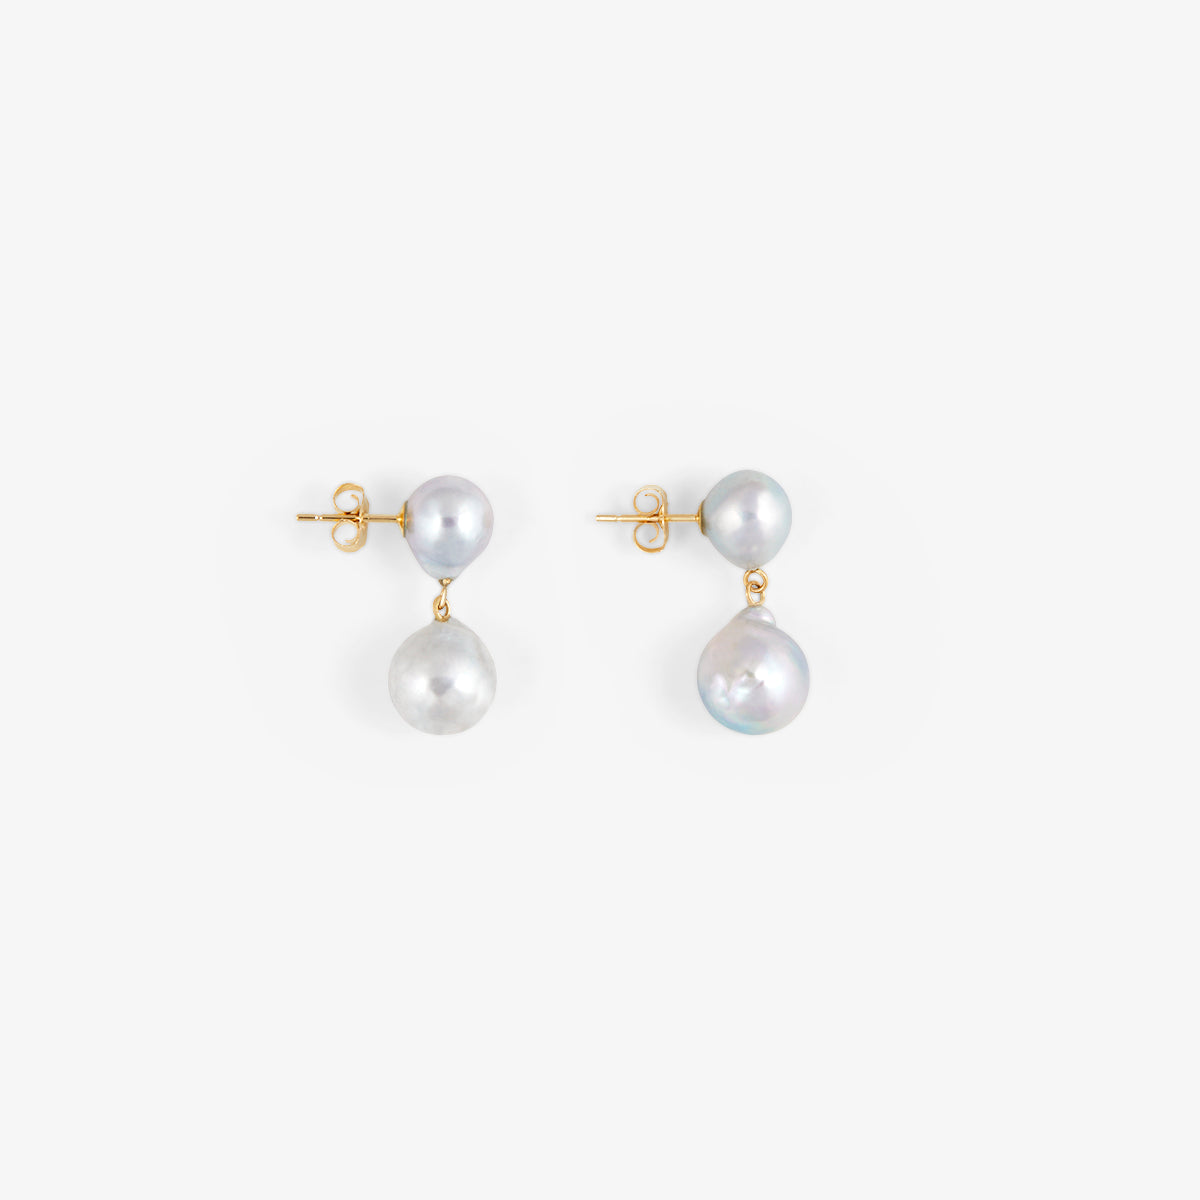 One-of-a-Kind Akoya Pearl Drop Earrings